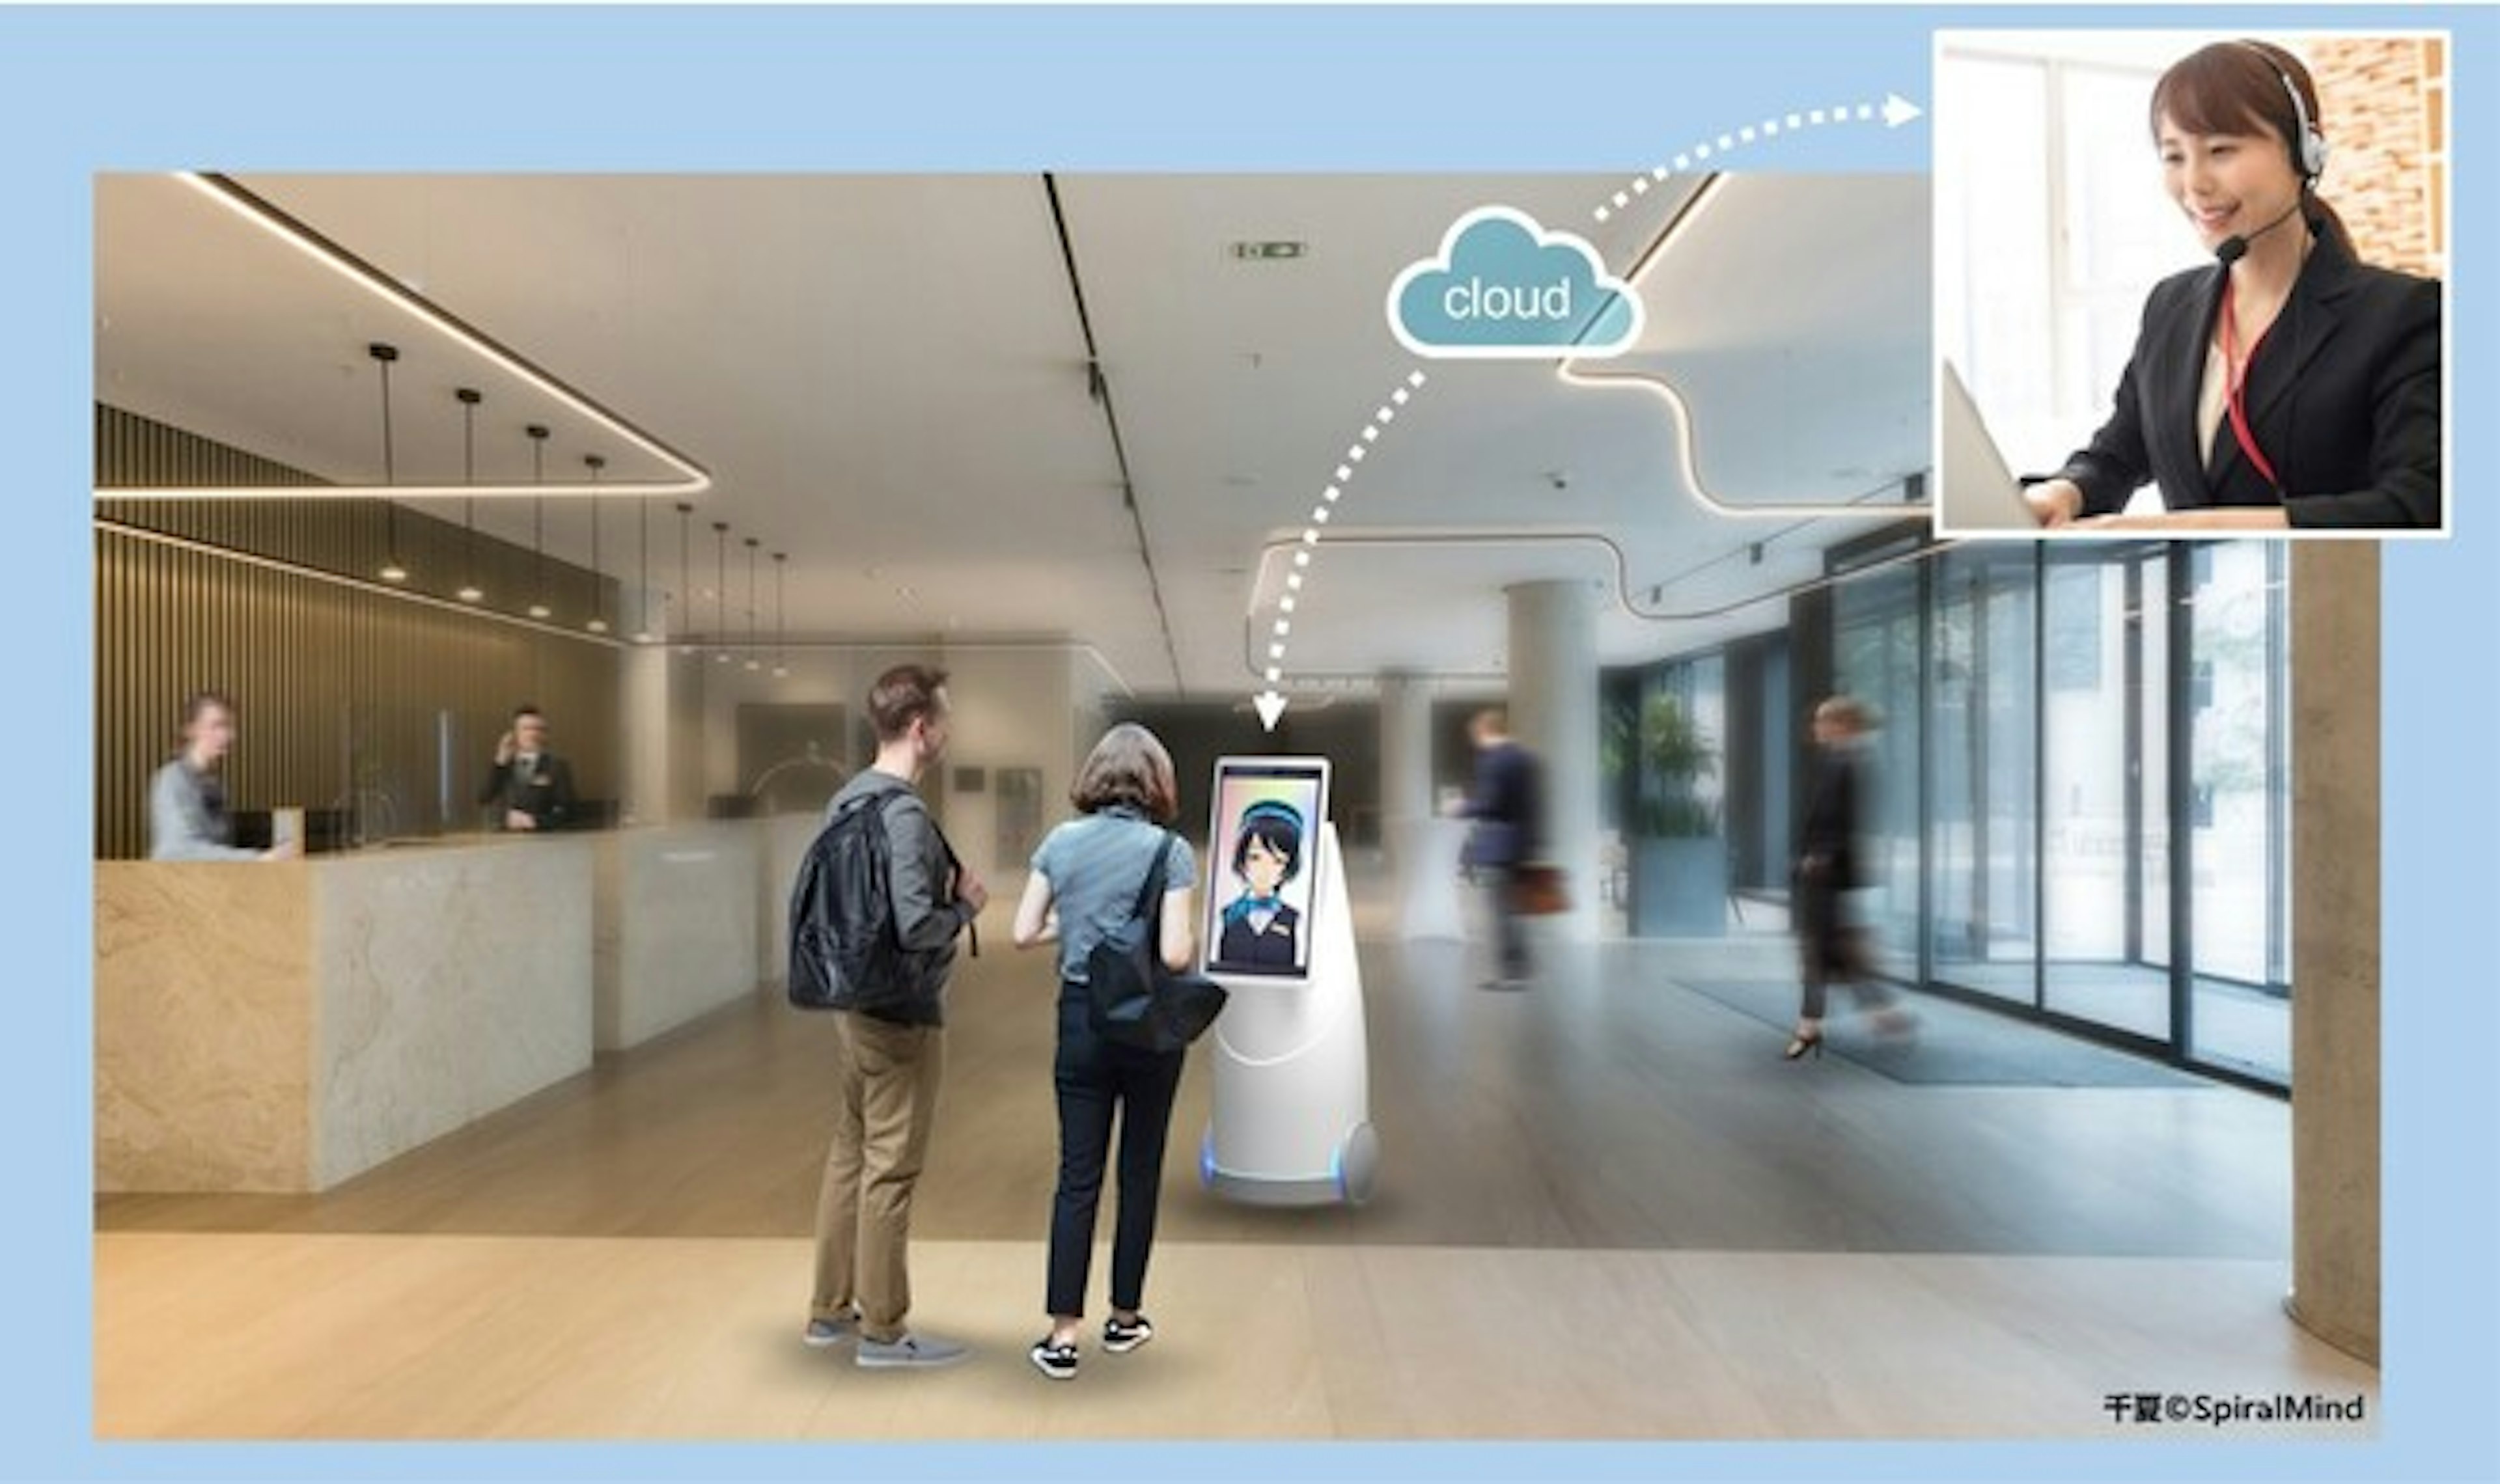 DFA Robotics、ultimatrust・スピンと共にサービスロボットを起点とした顧客体験価値の創出を目的に3社協業を開始
ロボット×アバター×デジタルツインを強みにプロダクト開発、5⽉30・31⽇に東京ビックサイトで開催の「ホテル開発＆リニューアルフェア」にて初公開のキービジュアル